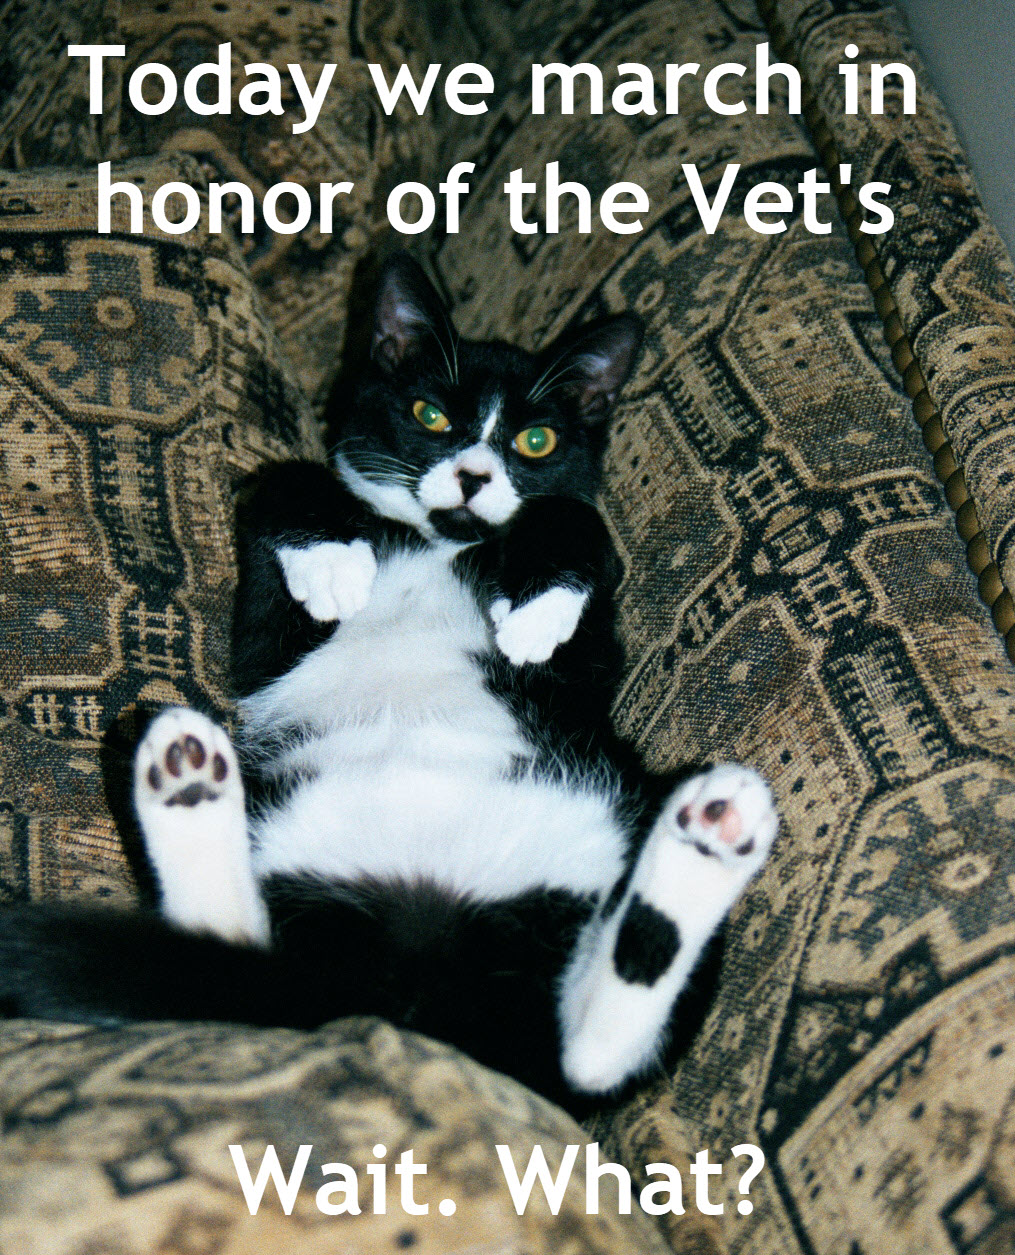 Honor the Vet's